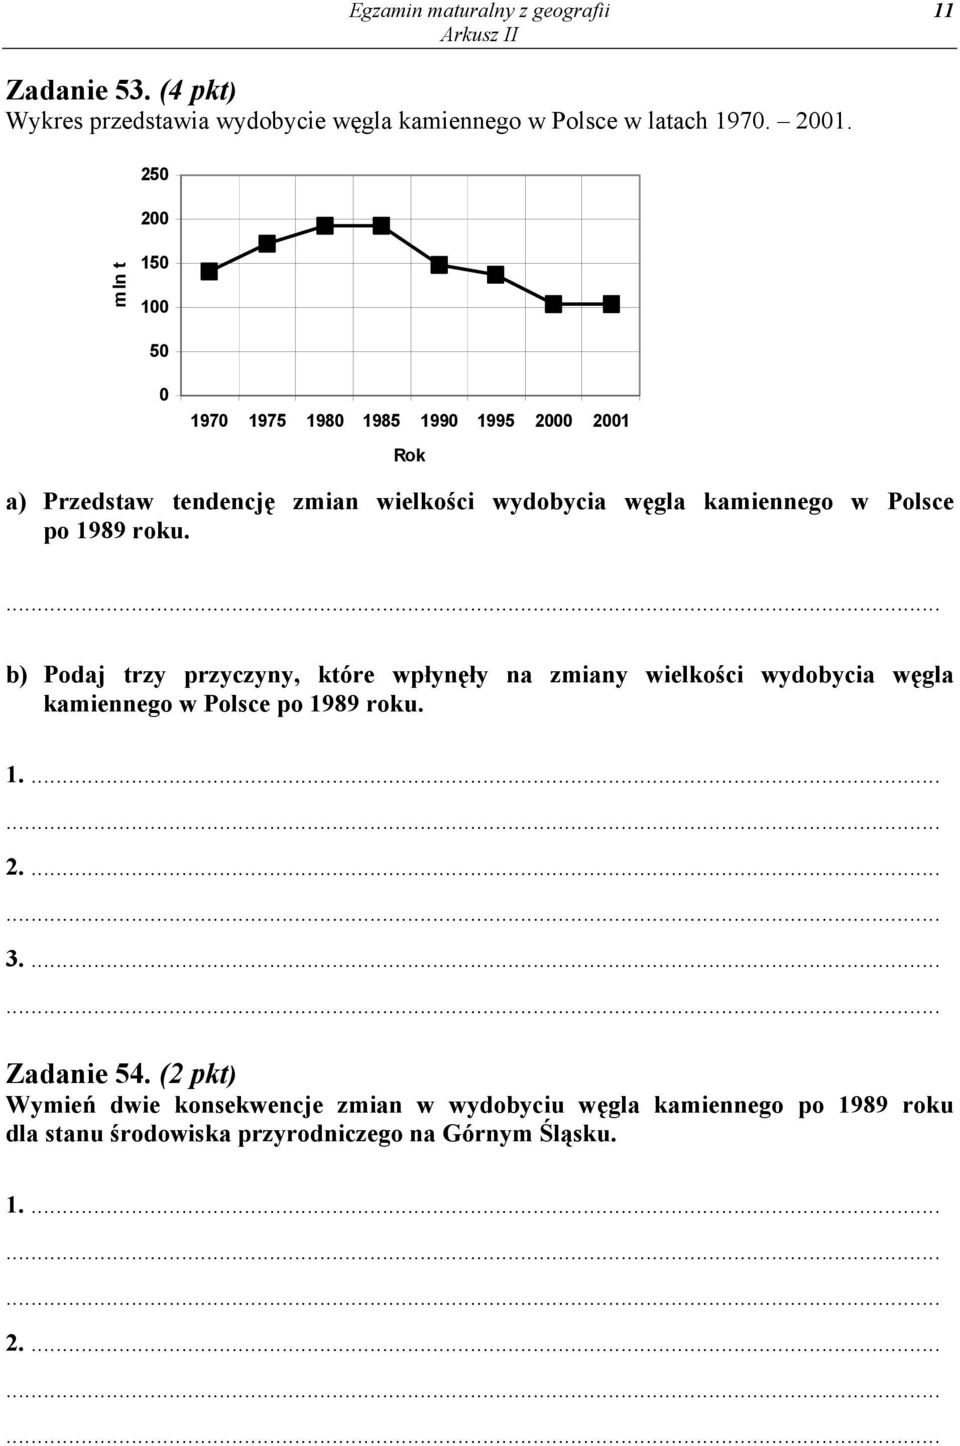 Polsce po 1989 roku. b) Podaj trzy przyczyny, które wpłynęły na zmiany wielkości wydobycia węgla kamiennego w Polsce po 1989 roku. 1.... 2.... 3.